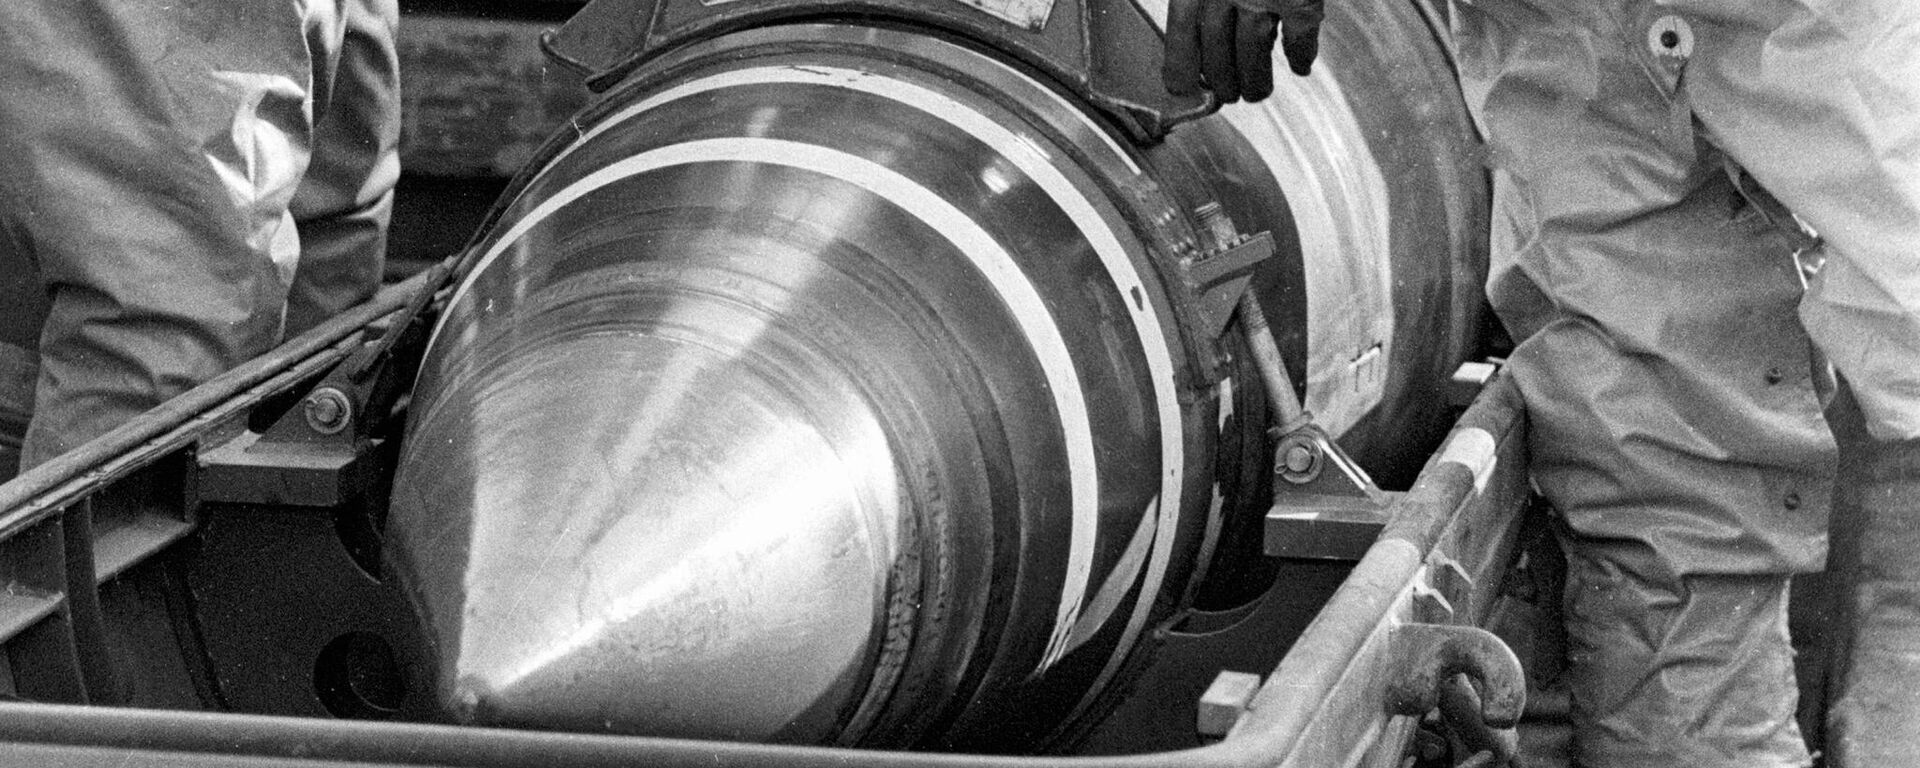 Los militares empaquetan cabezas nucleares en contenedores para trasladarlas desde Ucrania (archivo) - Sputnik Mundo, 1920, 15.01.2023